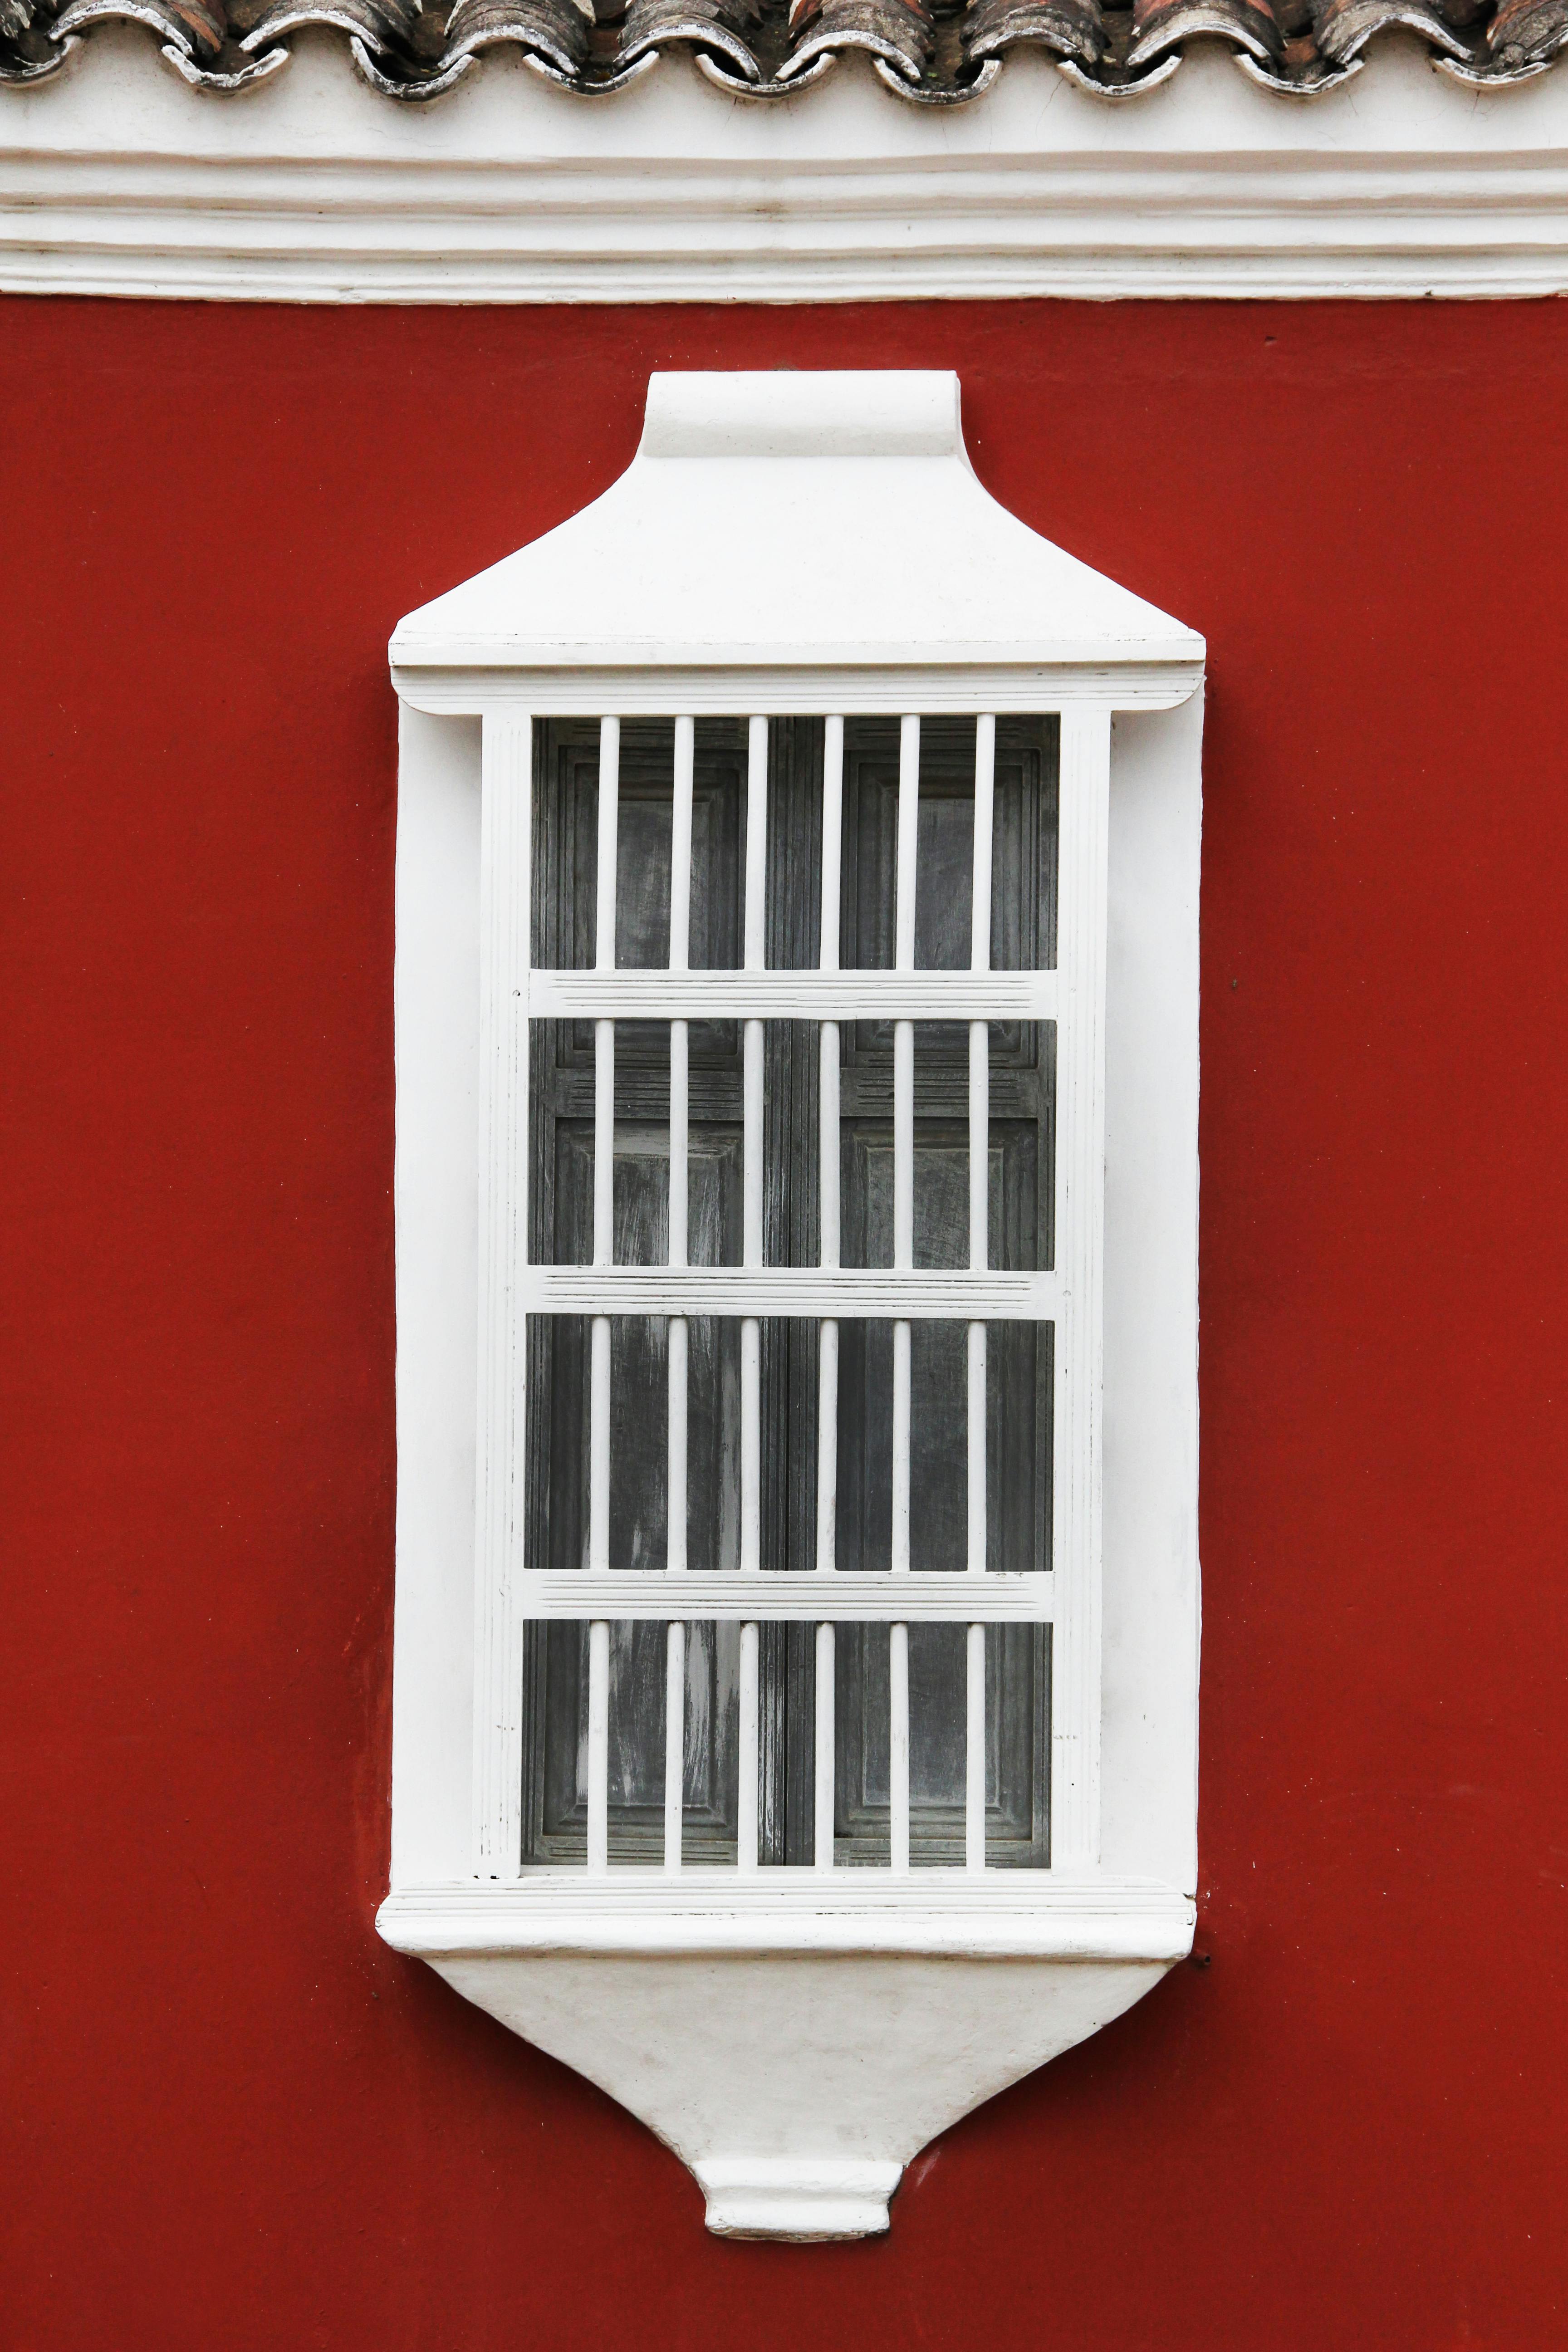 White Wooden Window Pane · Free Stock Photo